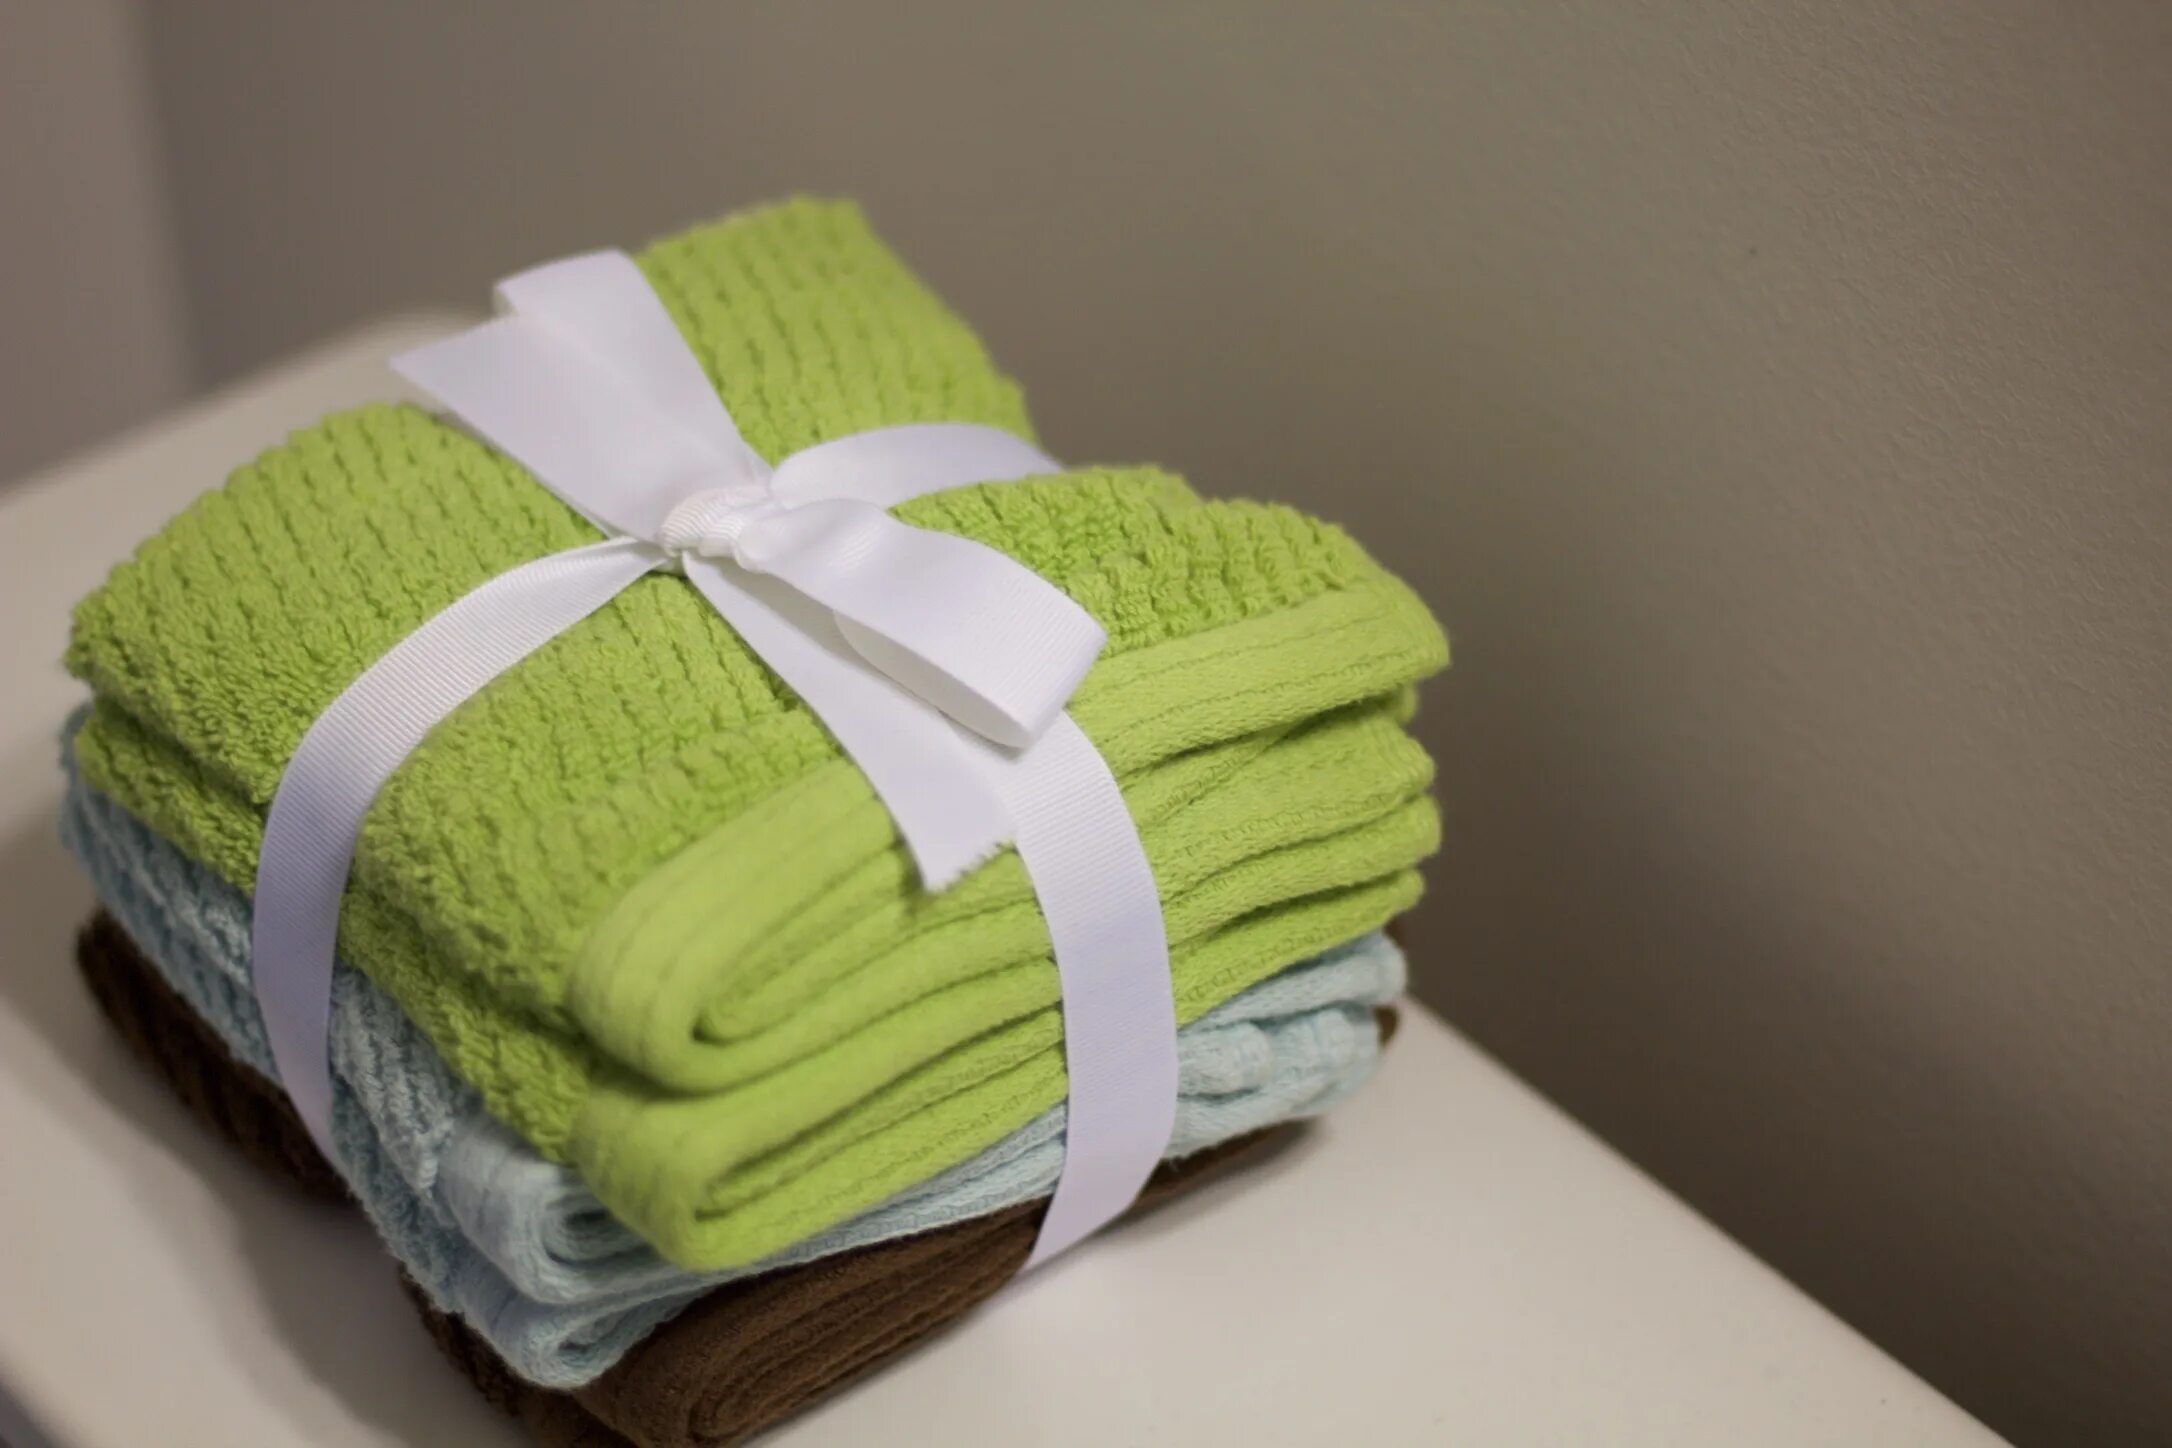 Полотенце в книге. Полотенце в подарок. Сувенирные полотенца. Украшения из полотенец. Полотенце зеленое на подарок.